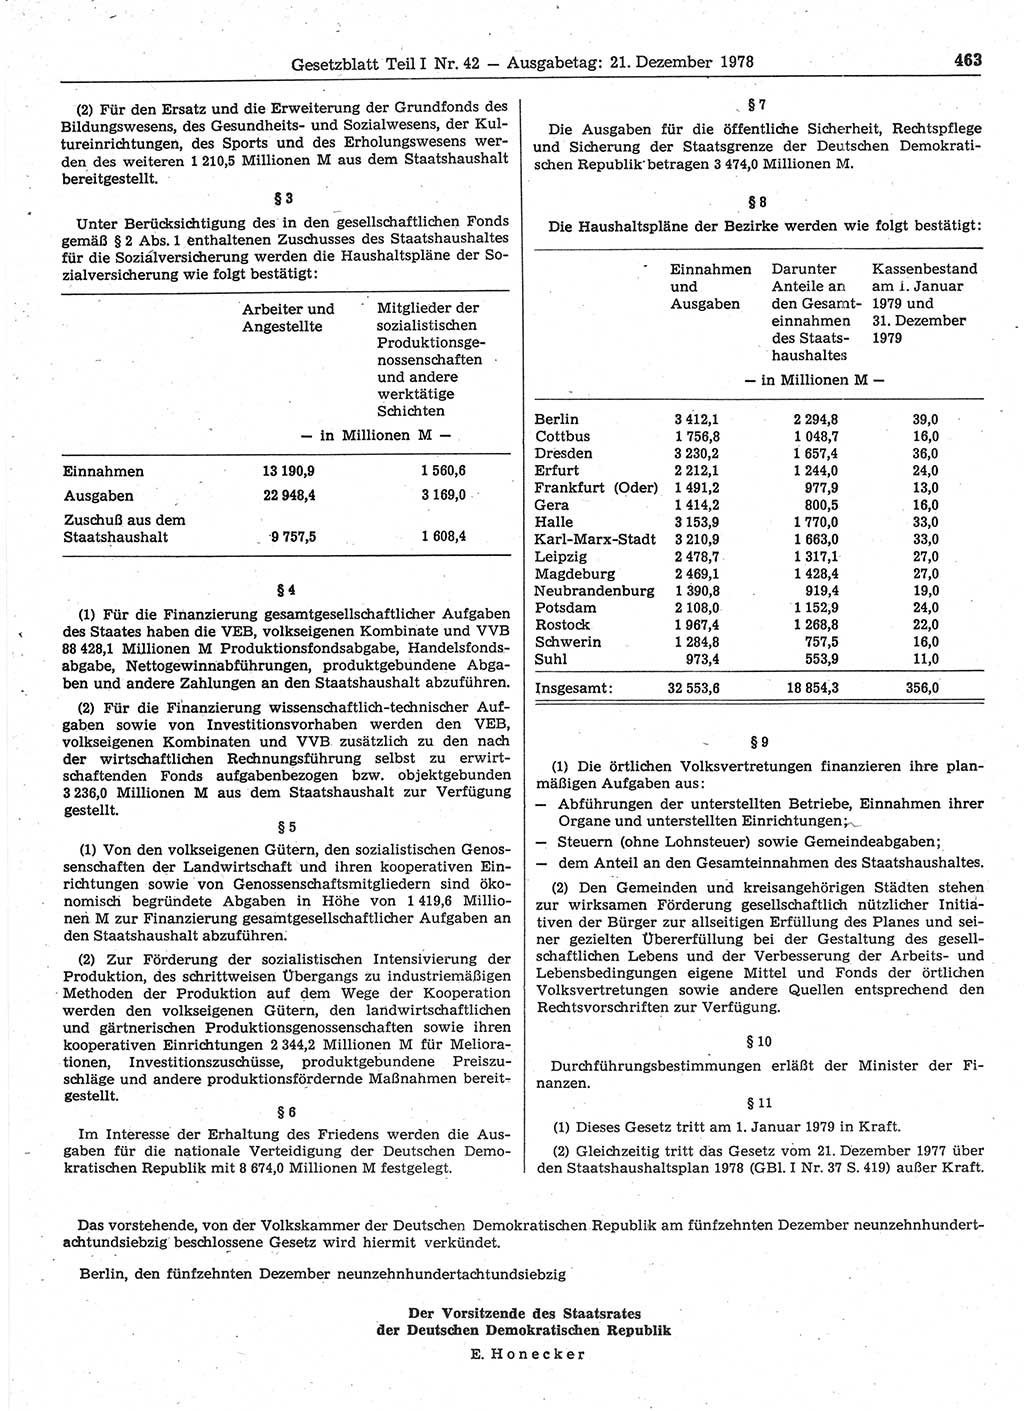 Gesetzblatt (GBl.) der Deutschen Demokratischen Republik (DDR) Teil Ⅰ 1978, Seite 463 (GBl. DDR Ⅰ 1978, S. 463)